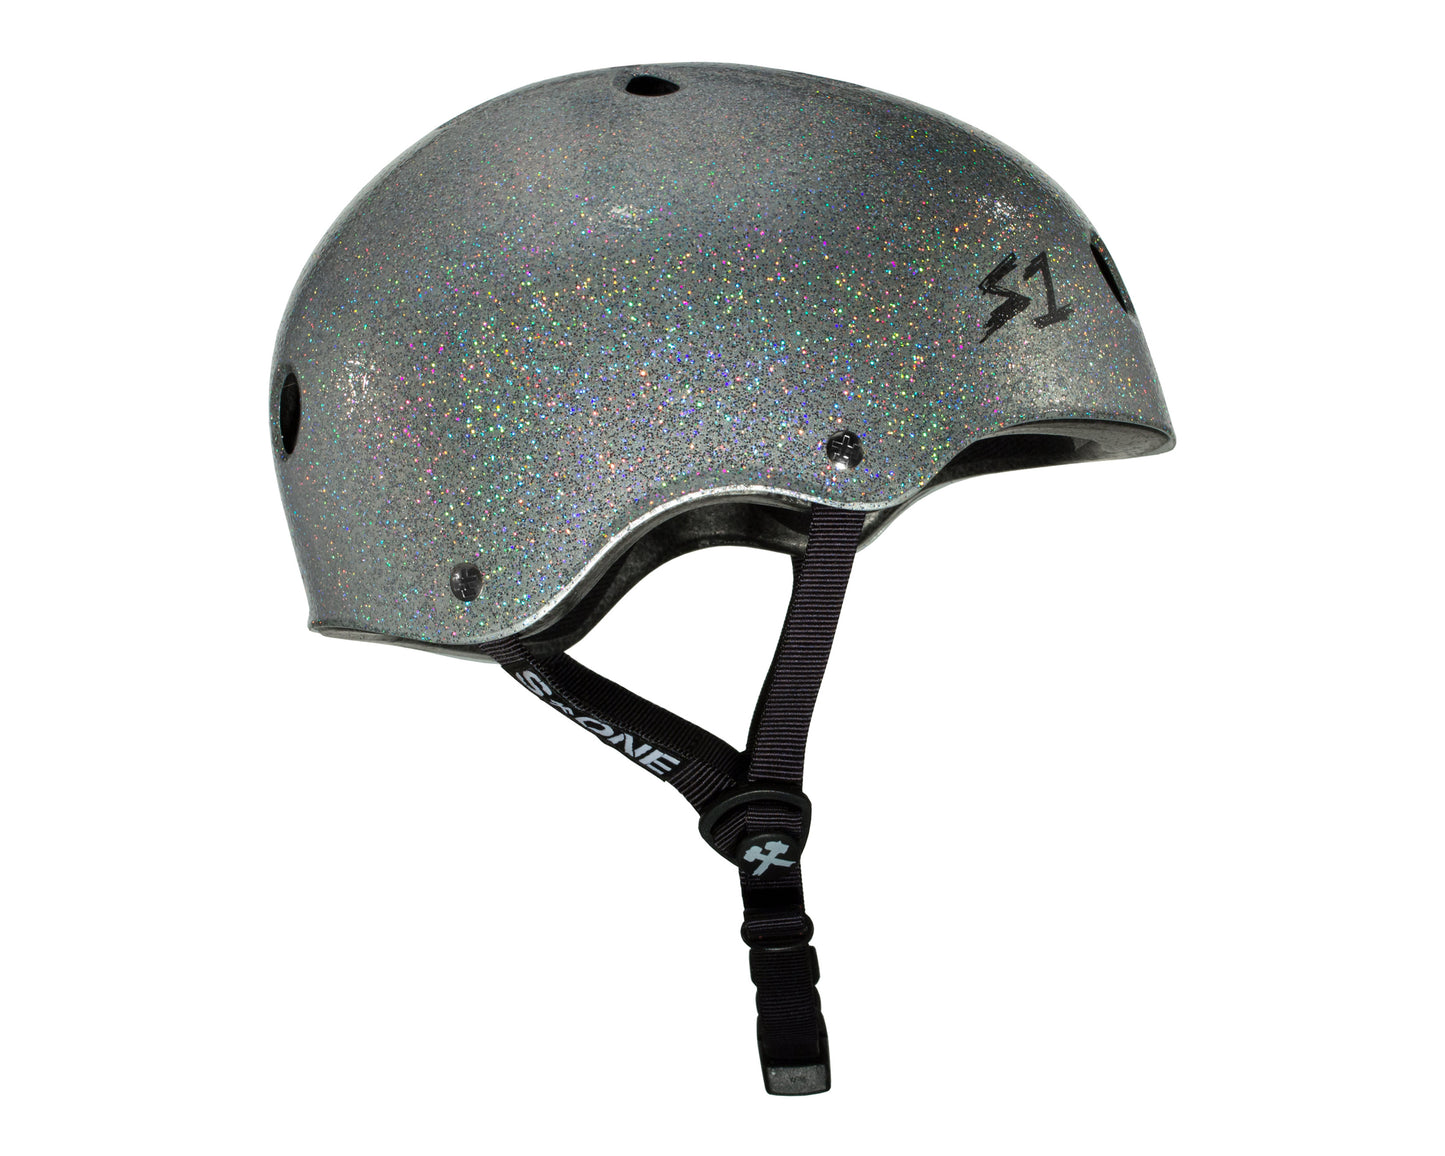 S1 Lifer Helmet - Silver Gloss Glitter